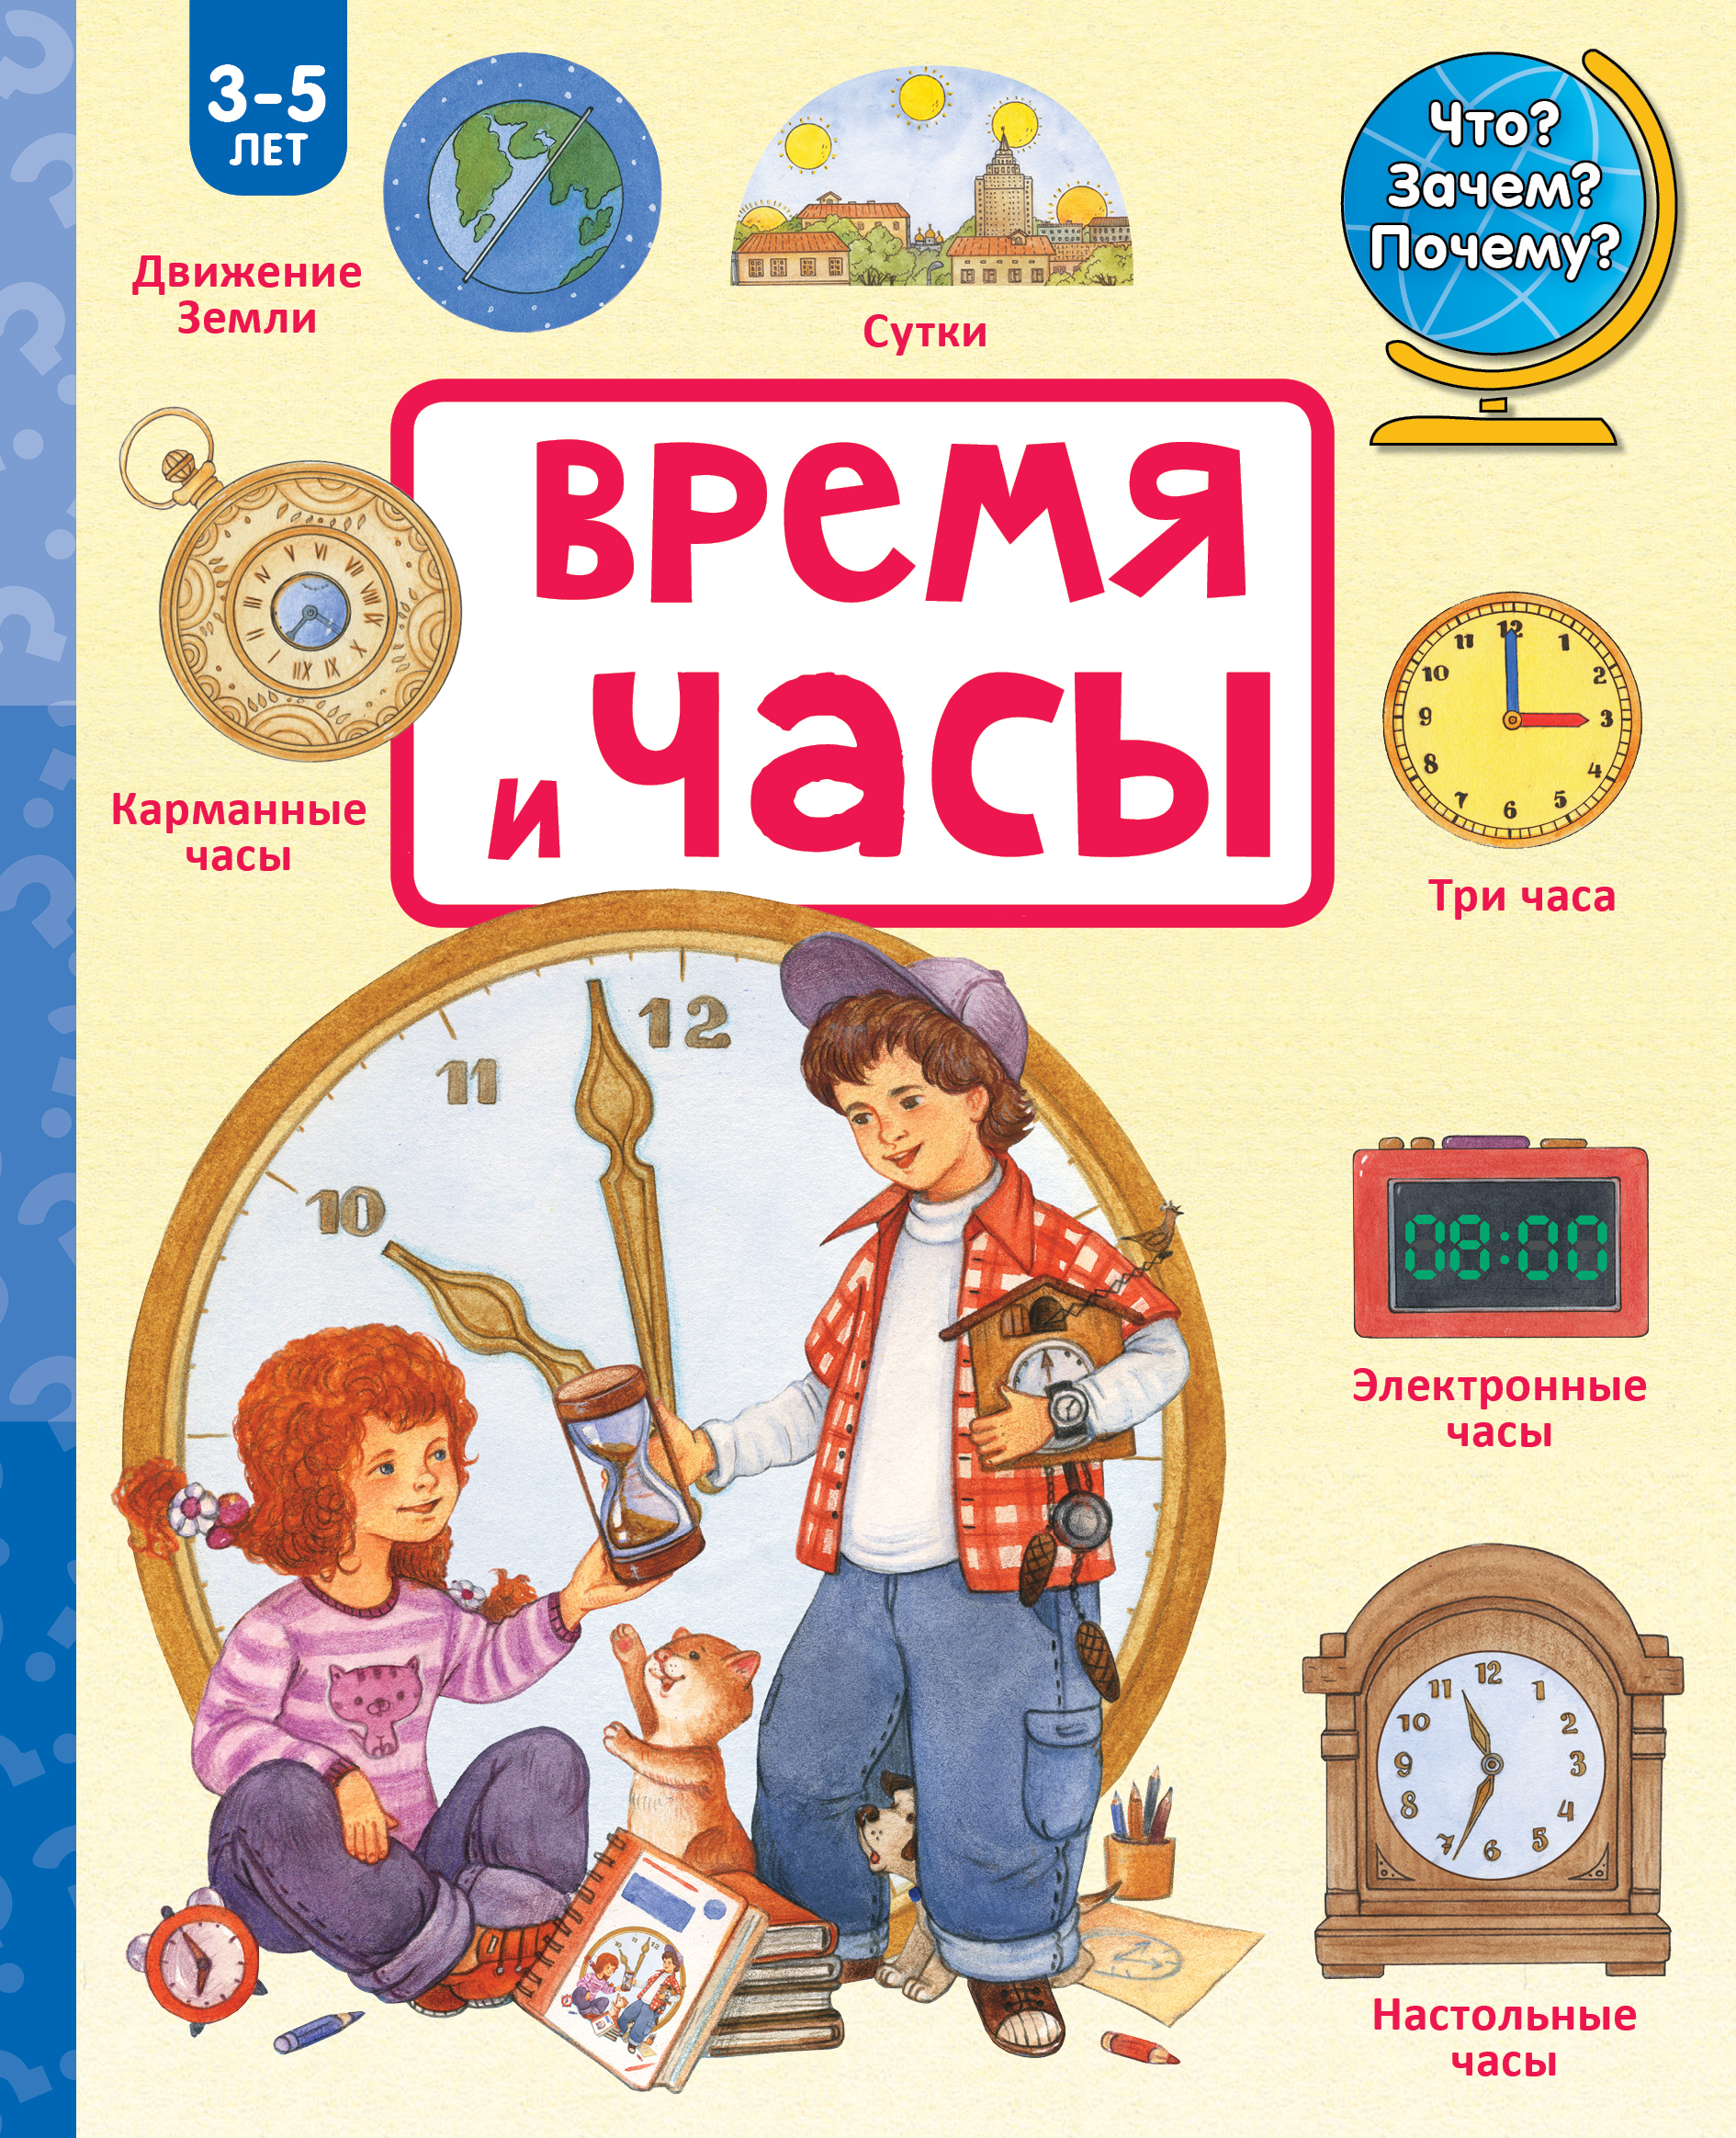 Причина времени книга. Часы книжка. Детские книги. Книги про часы для детей. Детская книжка про часы.